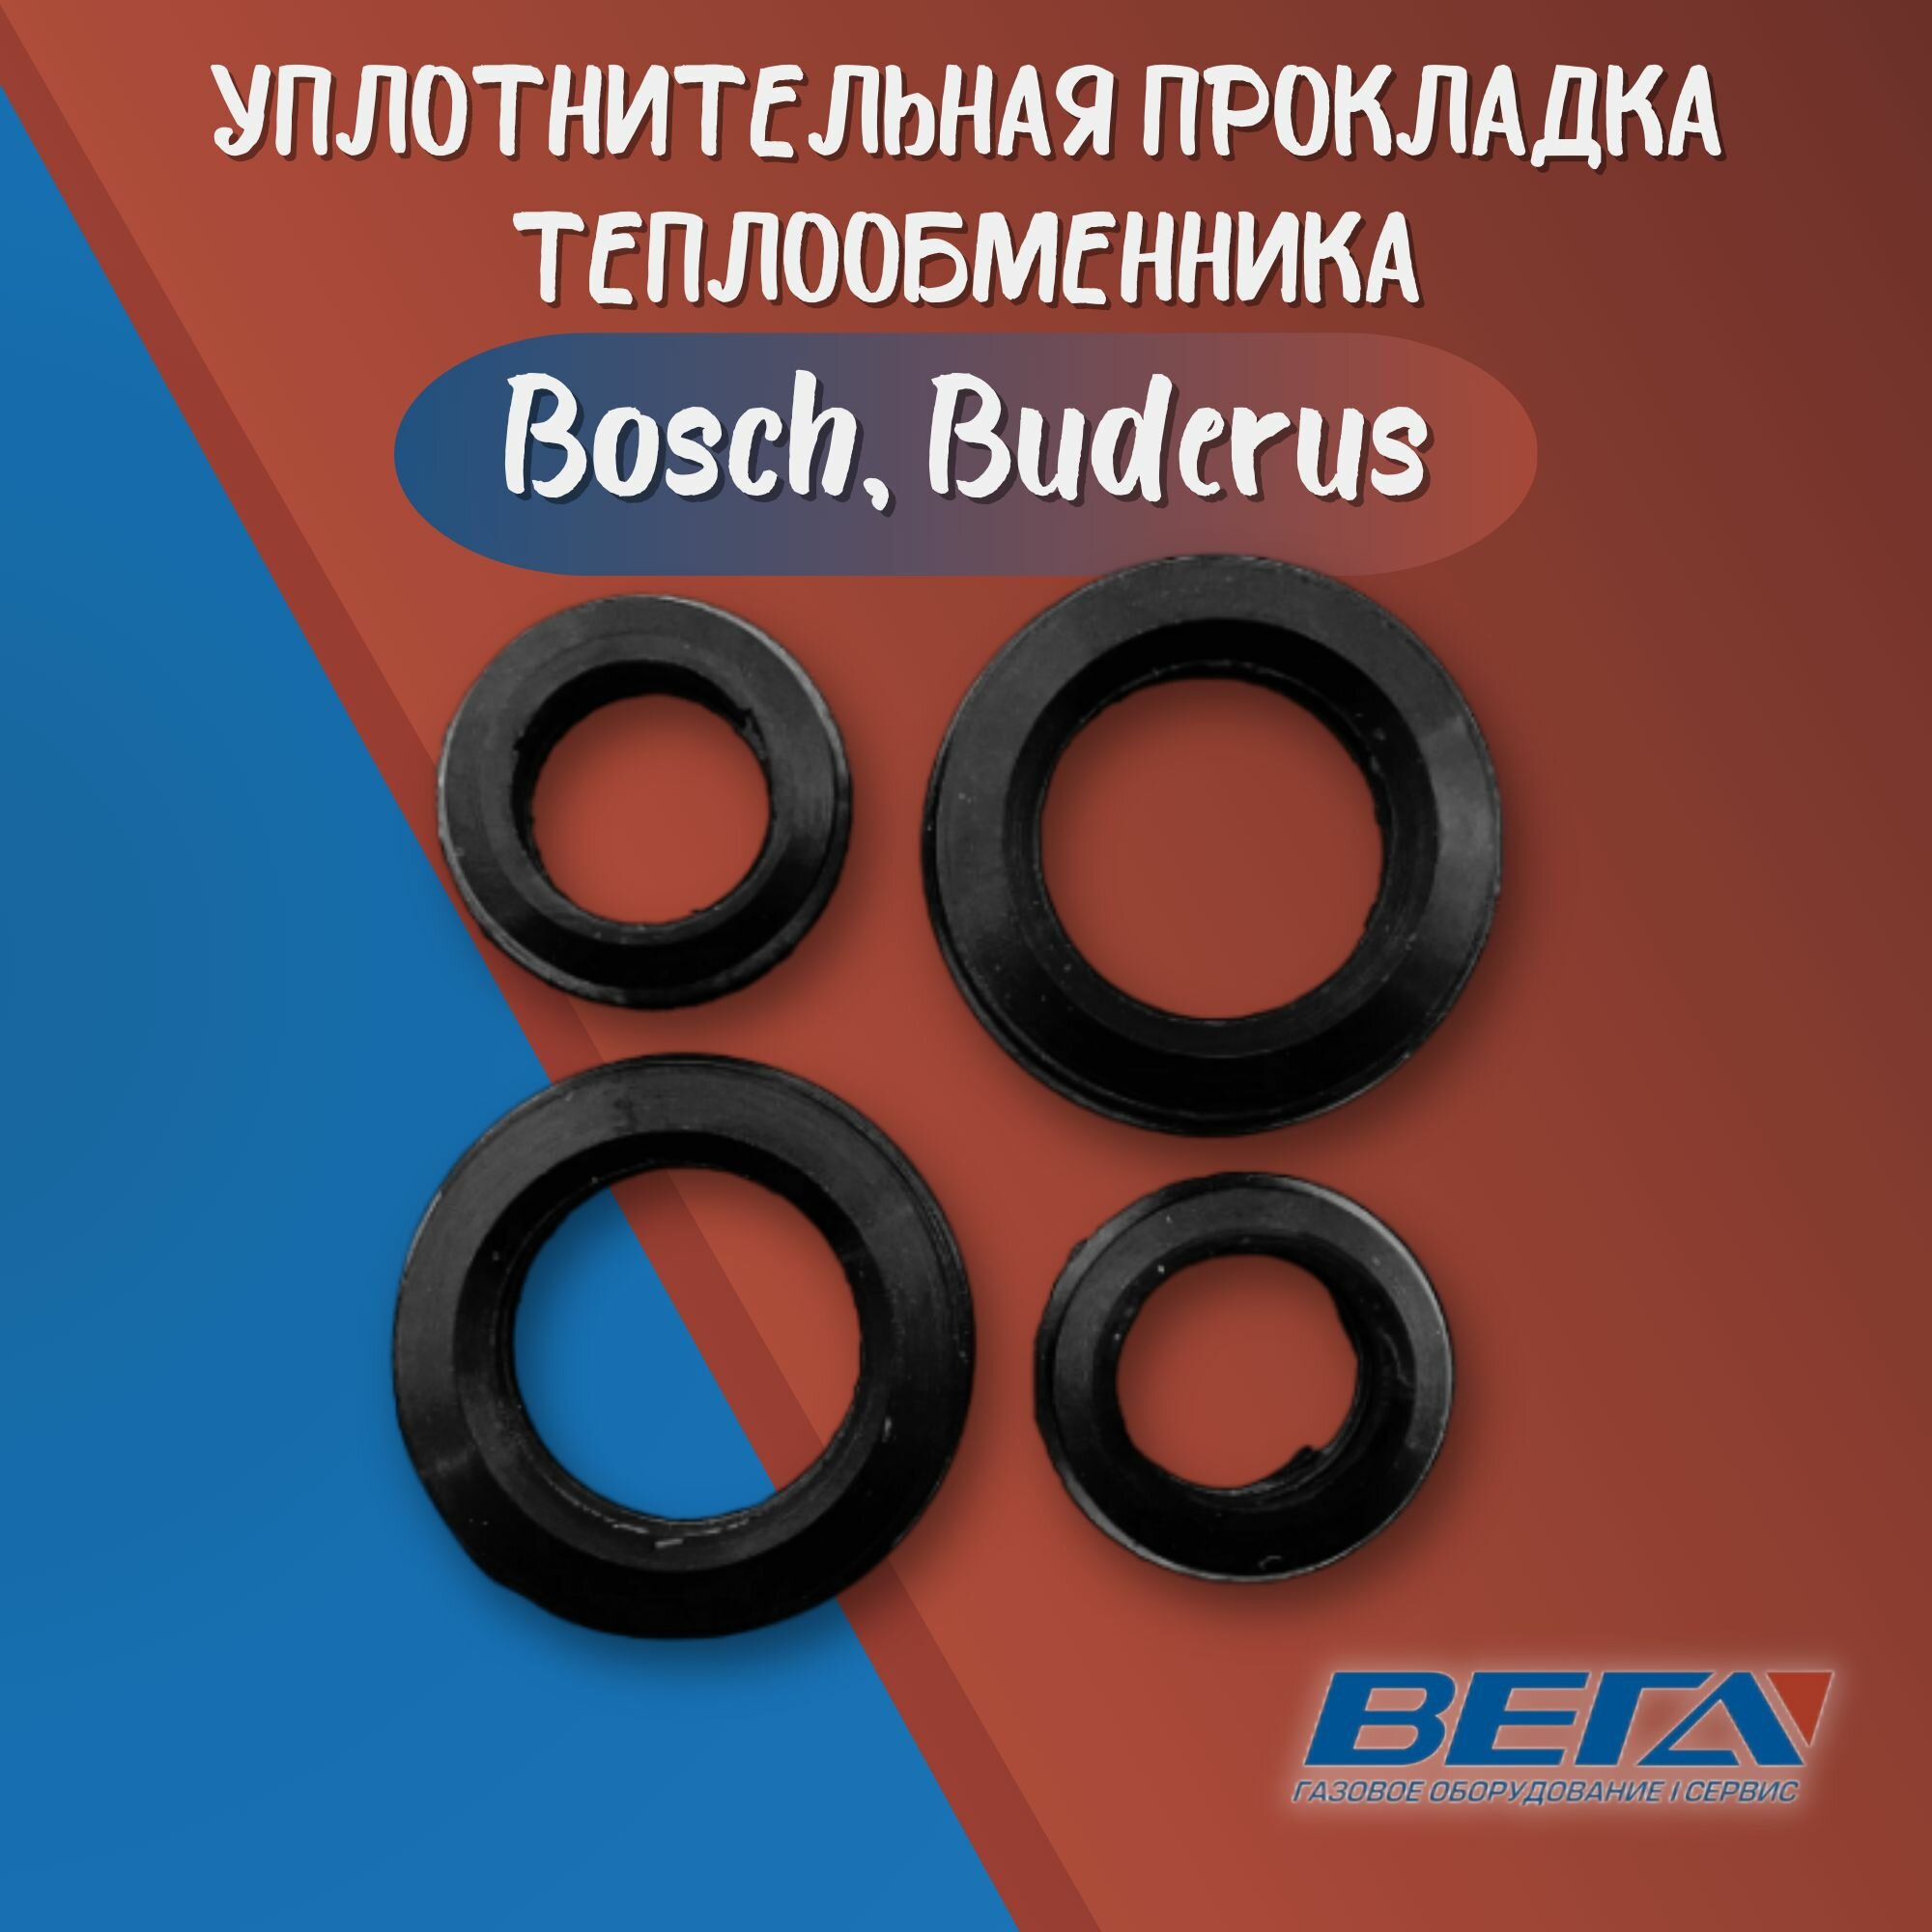 Прокладка уплотнительная теплообменника Bosch, Buderus